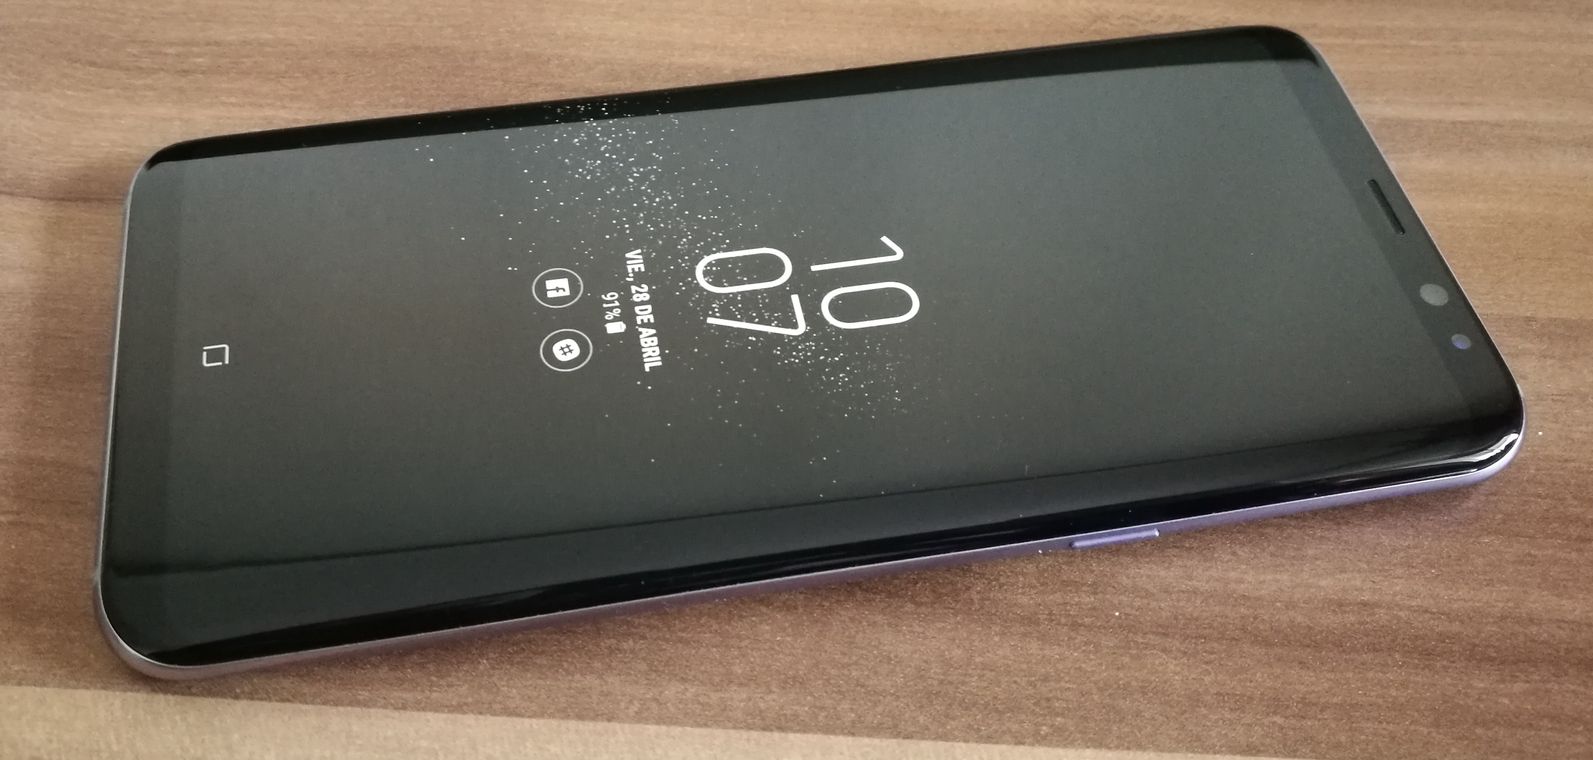 Samsung Galaxy S8+, lo hemos probado 14